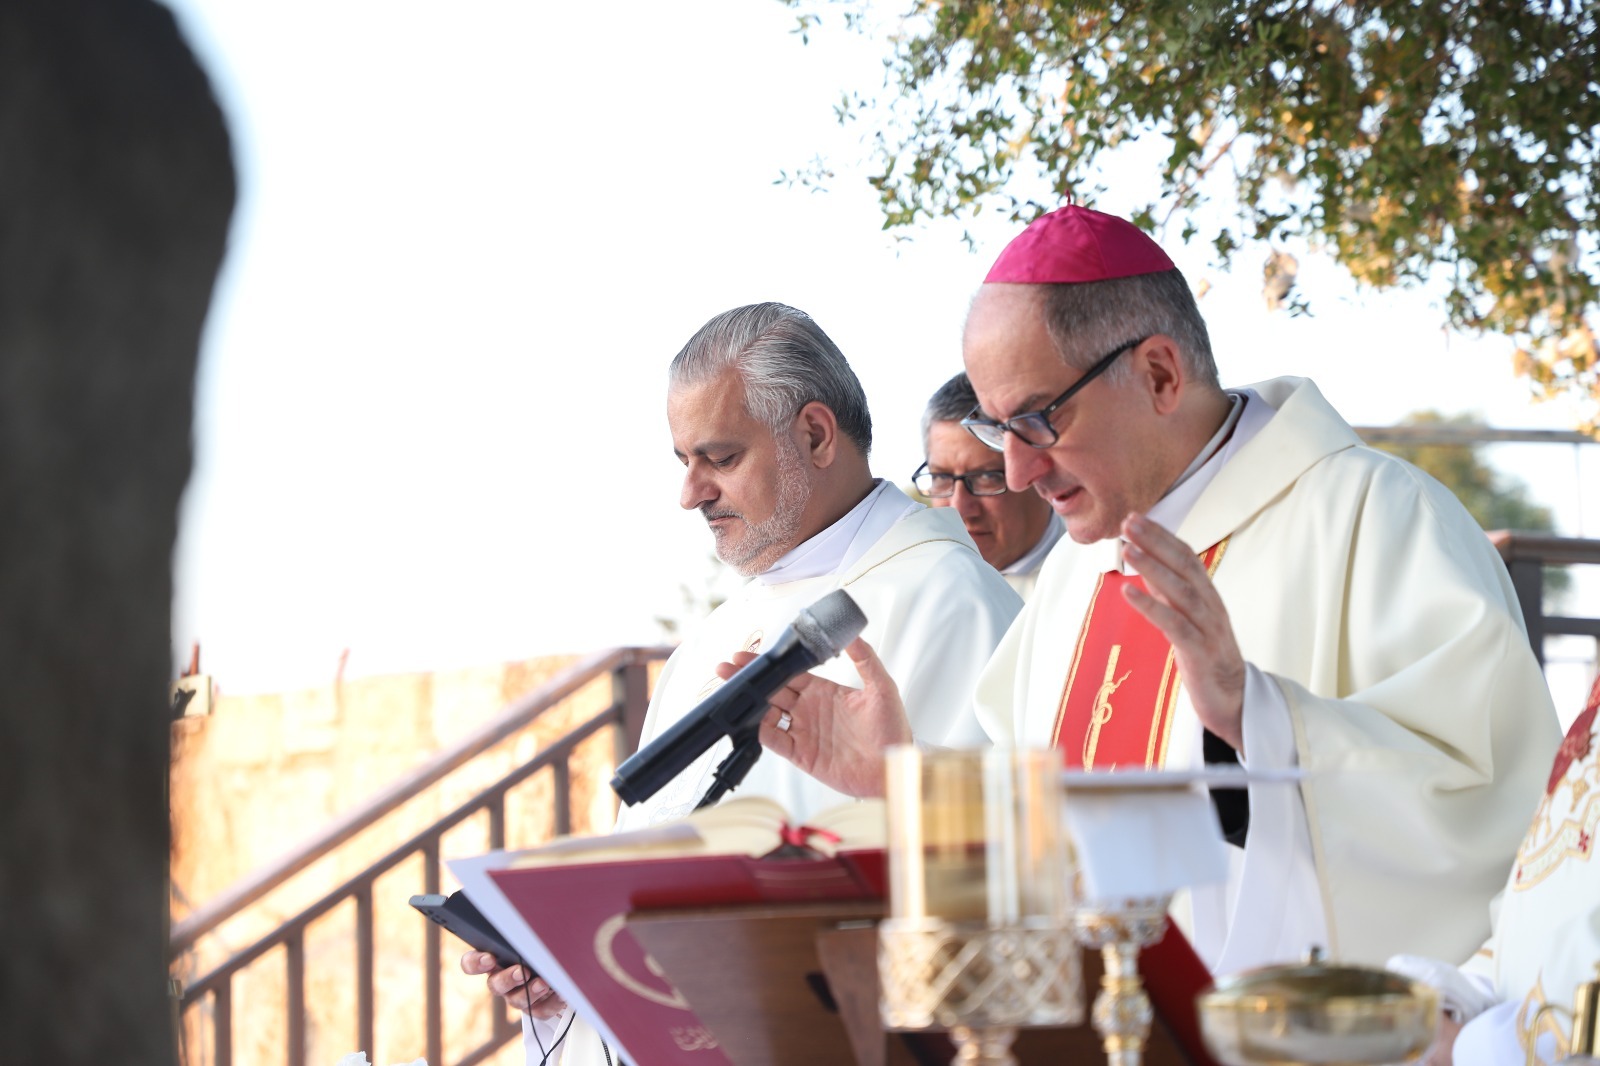 الكنيسة الكاثوليكية تحتفل بعيد مار الياس في موقعه في عجلون